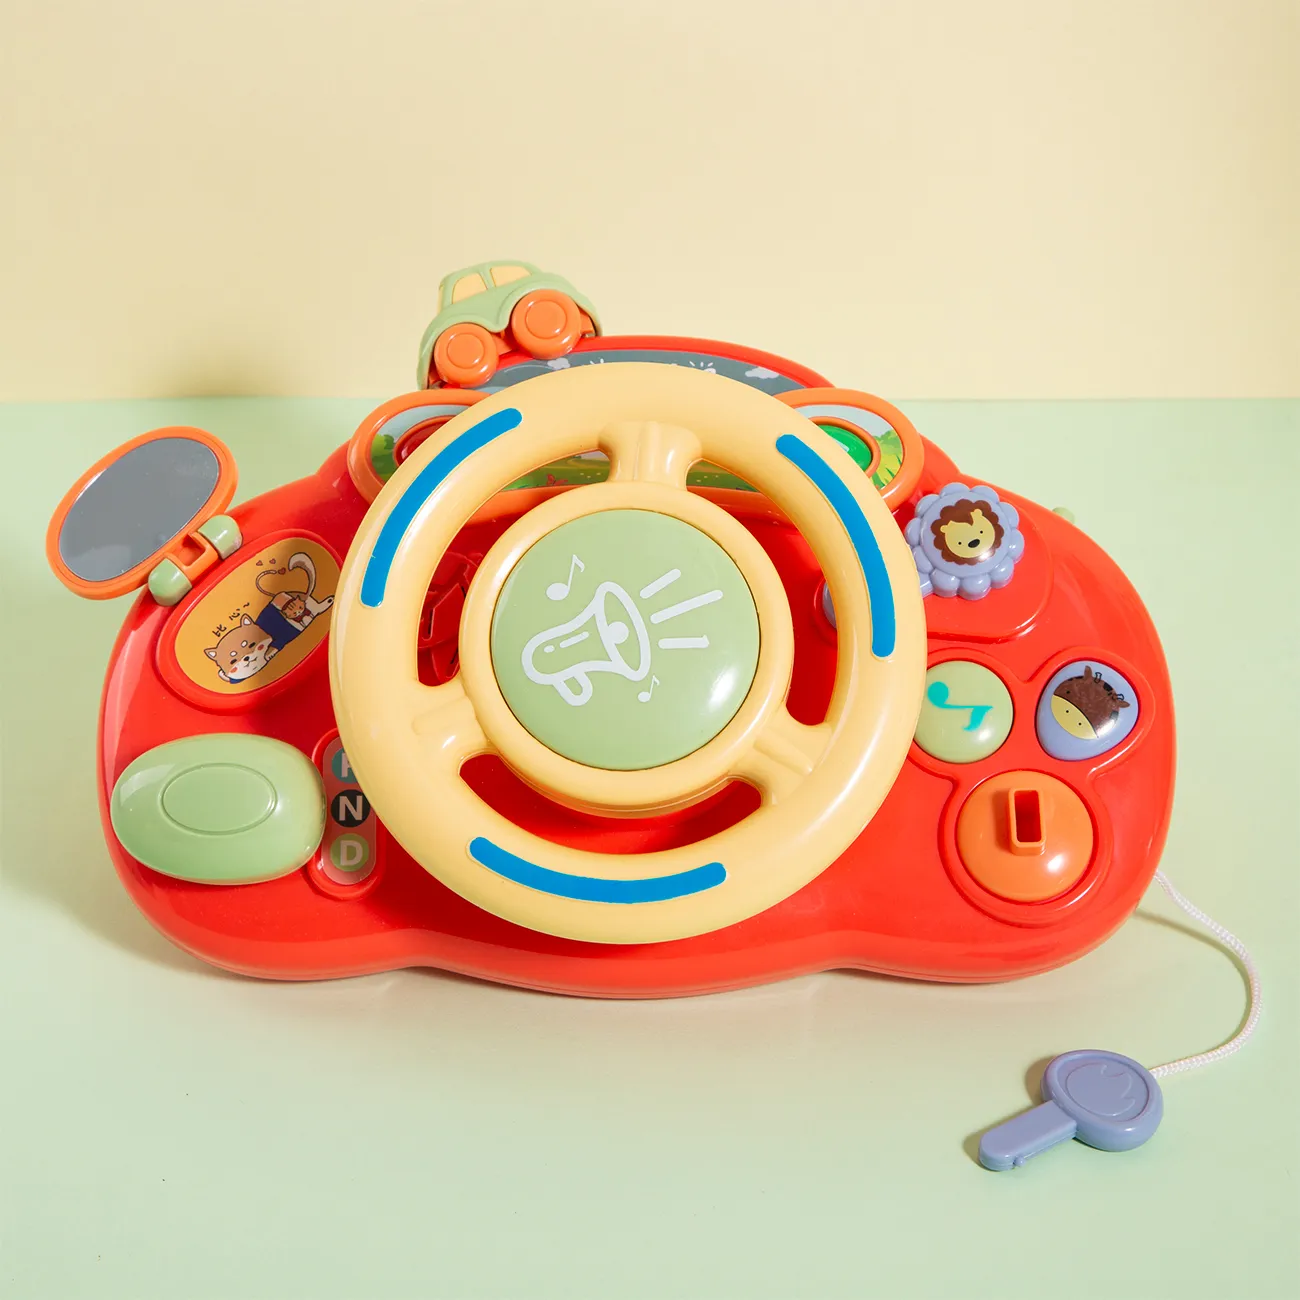 volante de juguete para niños pequeños con luces y sonidos simular la conducción de un coche de dibujos animados volante de conducción de juguete Color-A big image 1